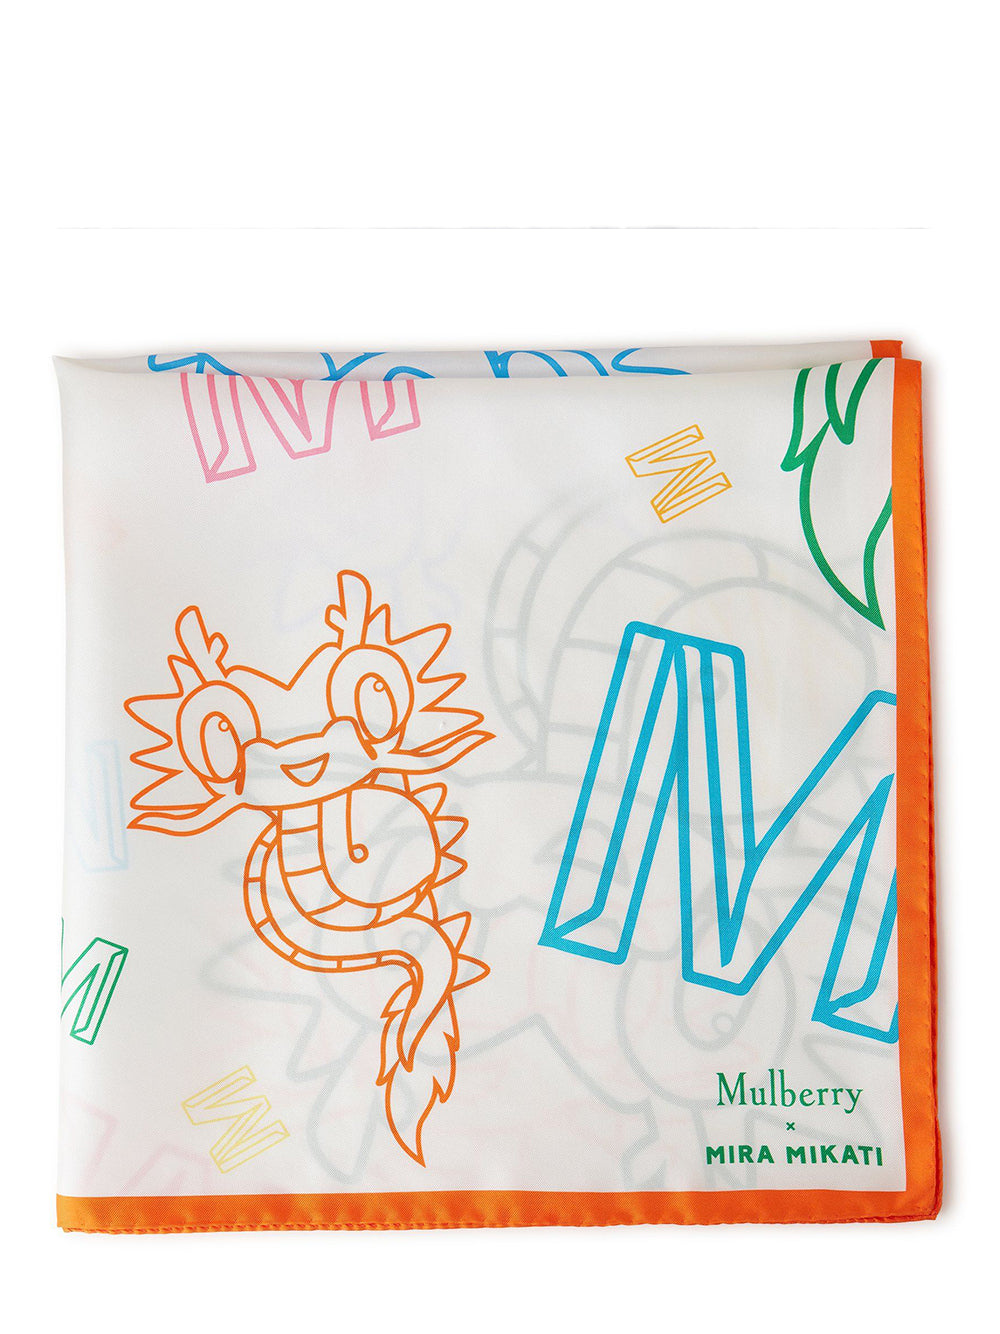 Mulberry x Mira Mikati Dragon Square 70 (Multicolour)